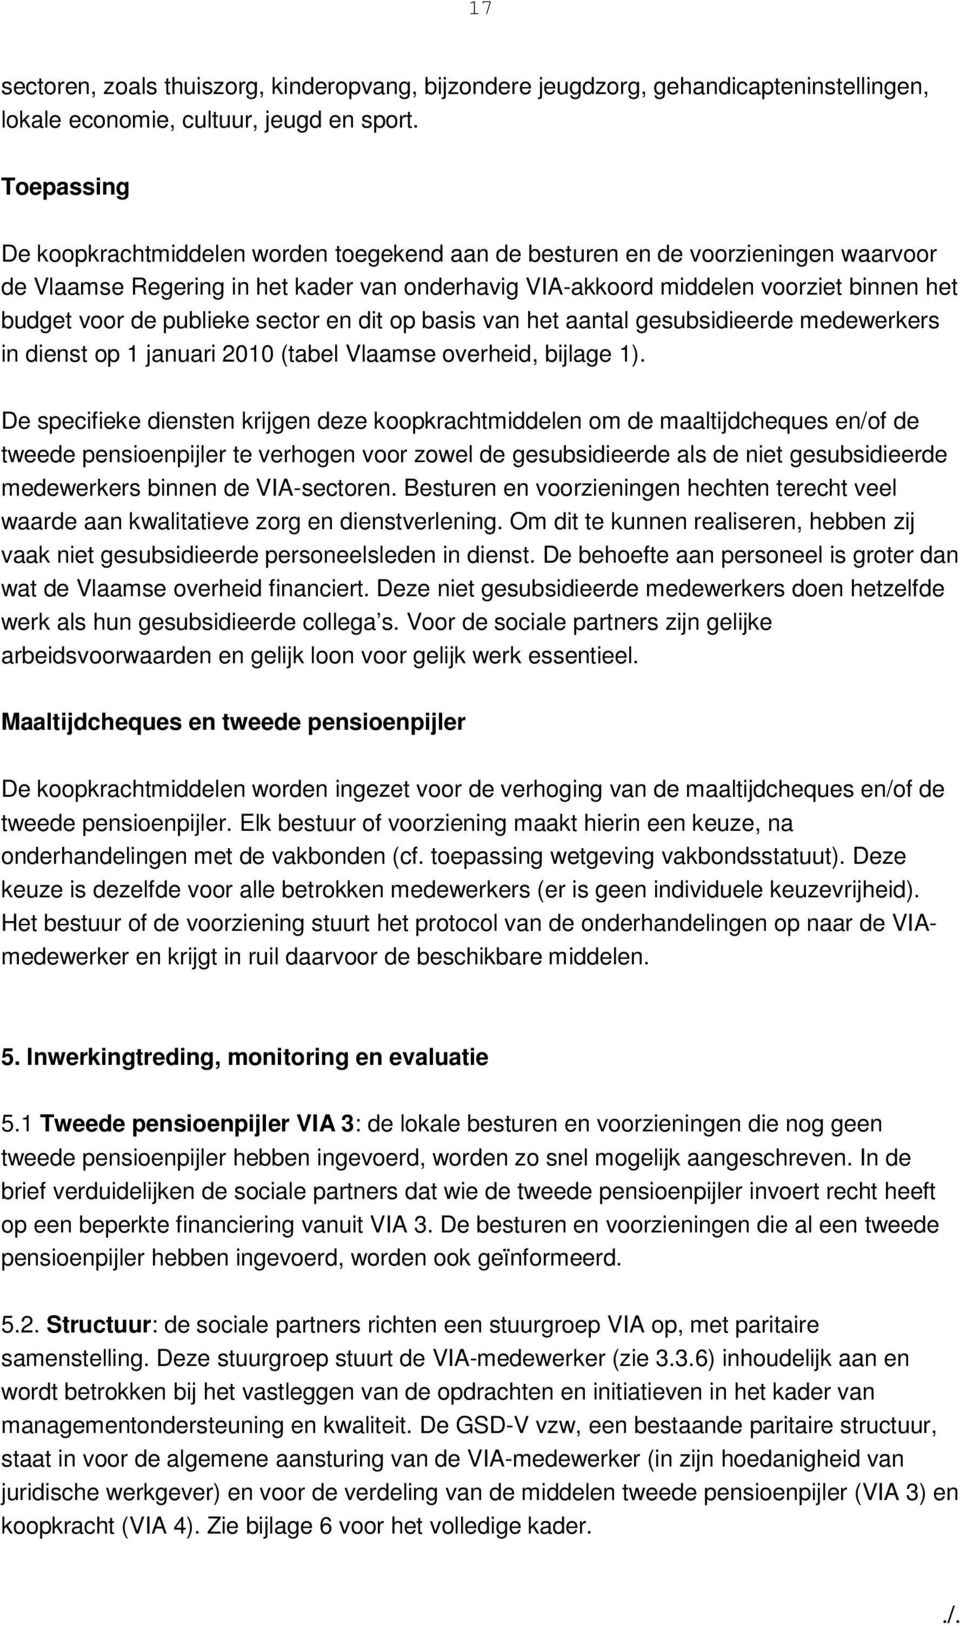 publieke sector en dit op basis van het aantal gesubsidieerde medewerkers in dienst op 1 januari 2010 (tabel Vlaamse overheid, bijlage 1).